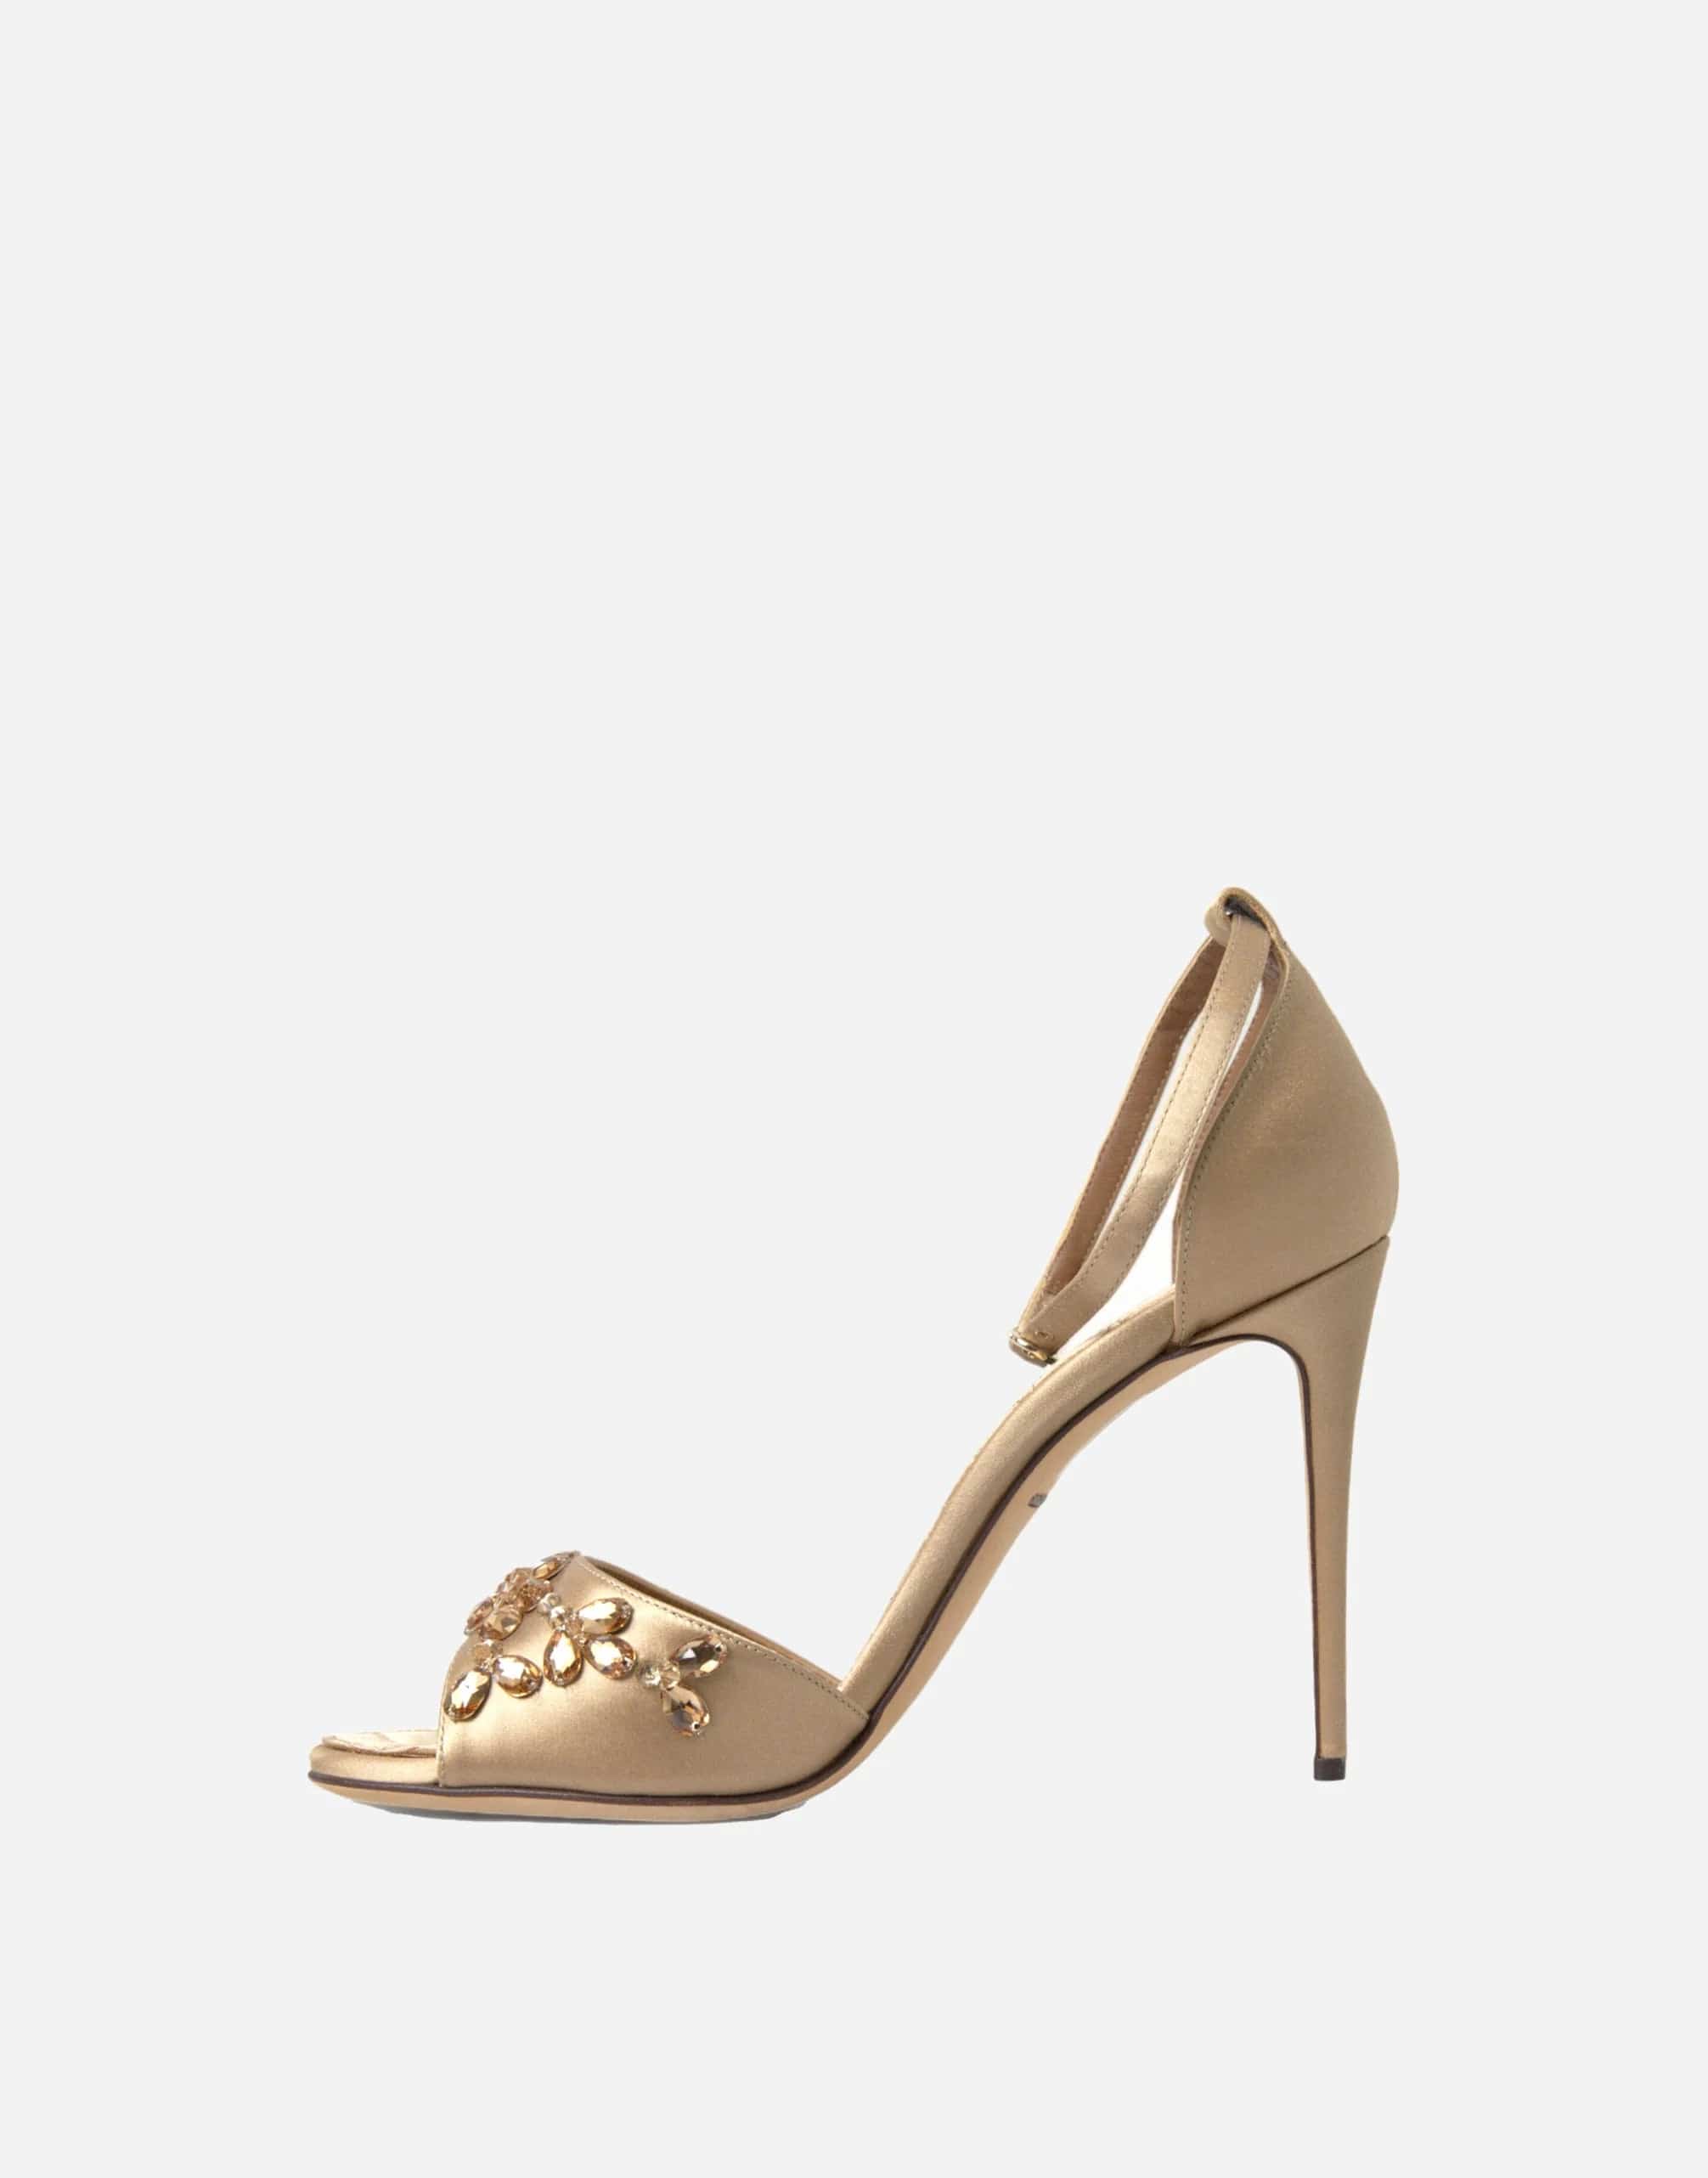 Dolce & Gabbana Ankle Strap Crystal Embellished Sandals